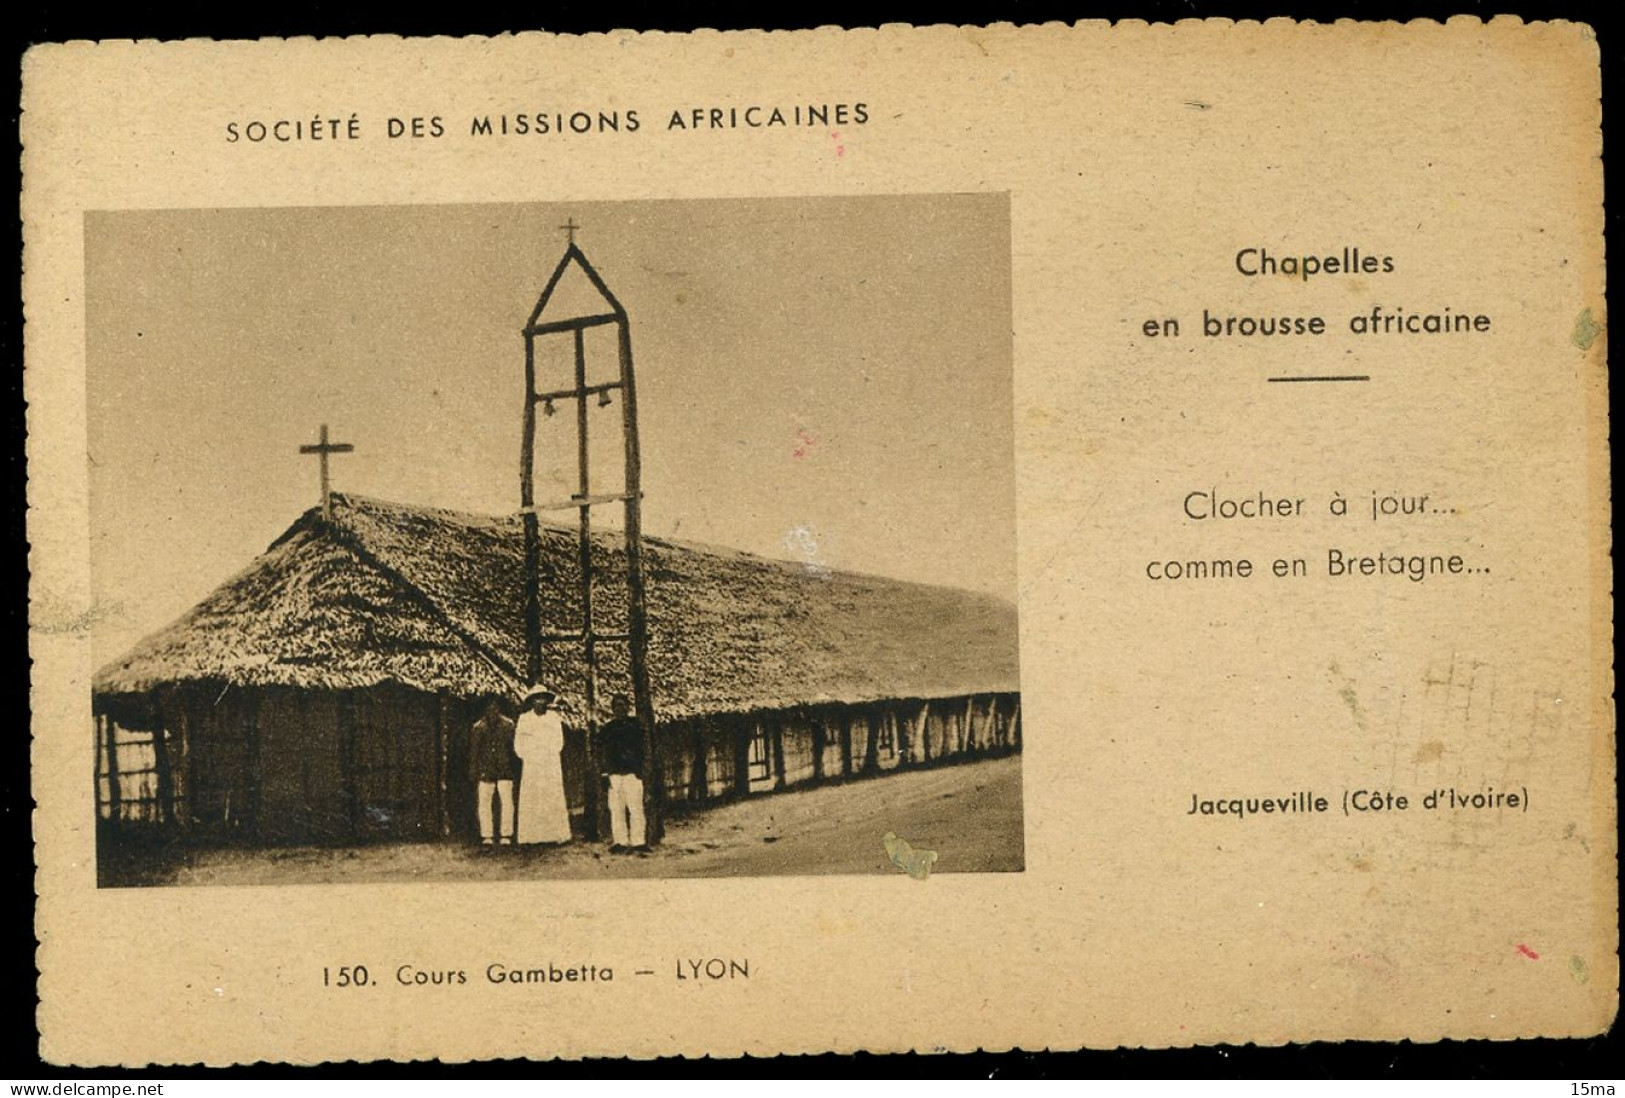 Cote D'Ivoire Jacqueville Société Des Missions Africaines Chapelles En Brousse Africaine - Ivory Coast